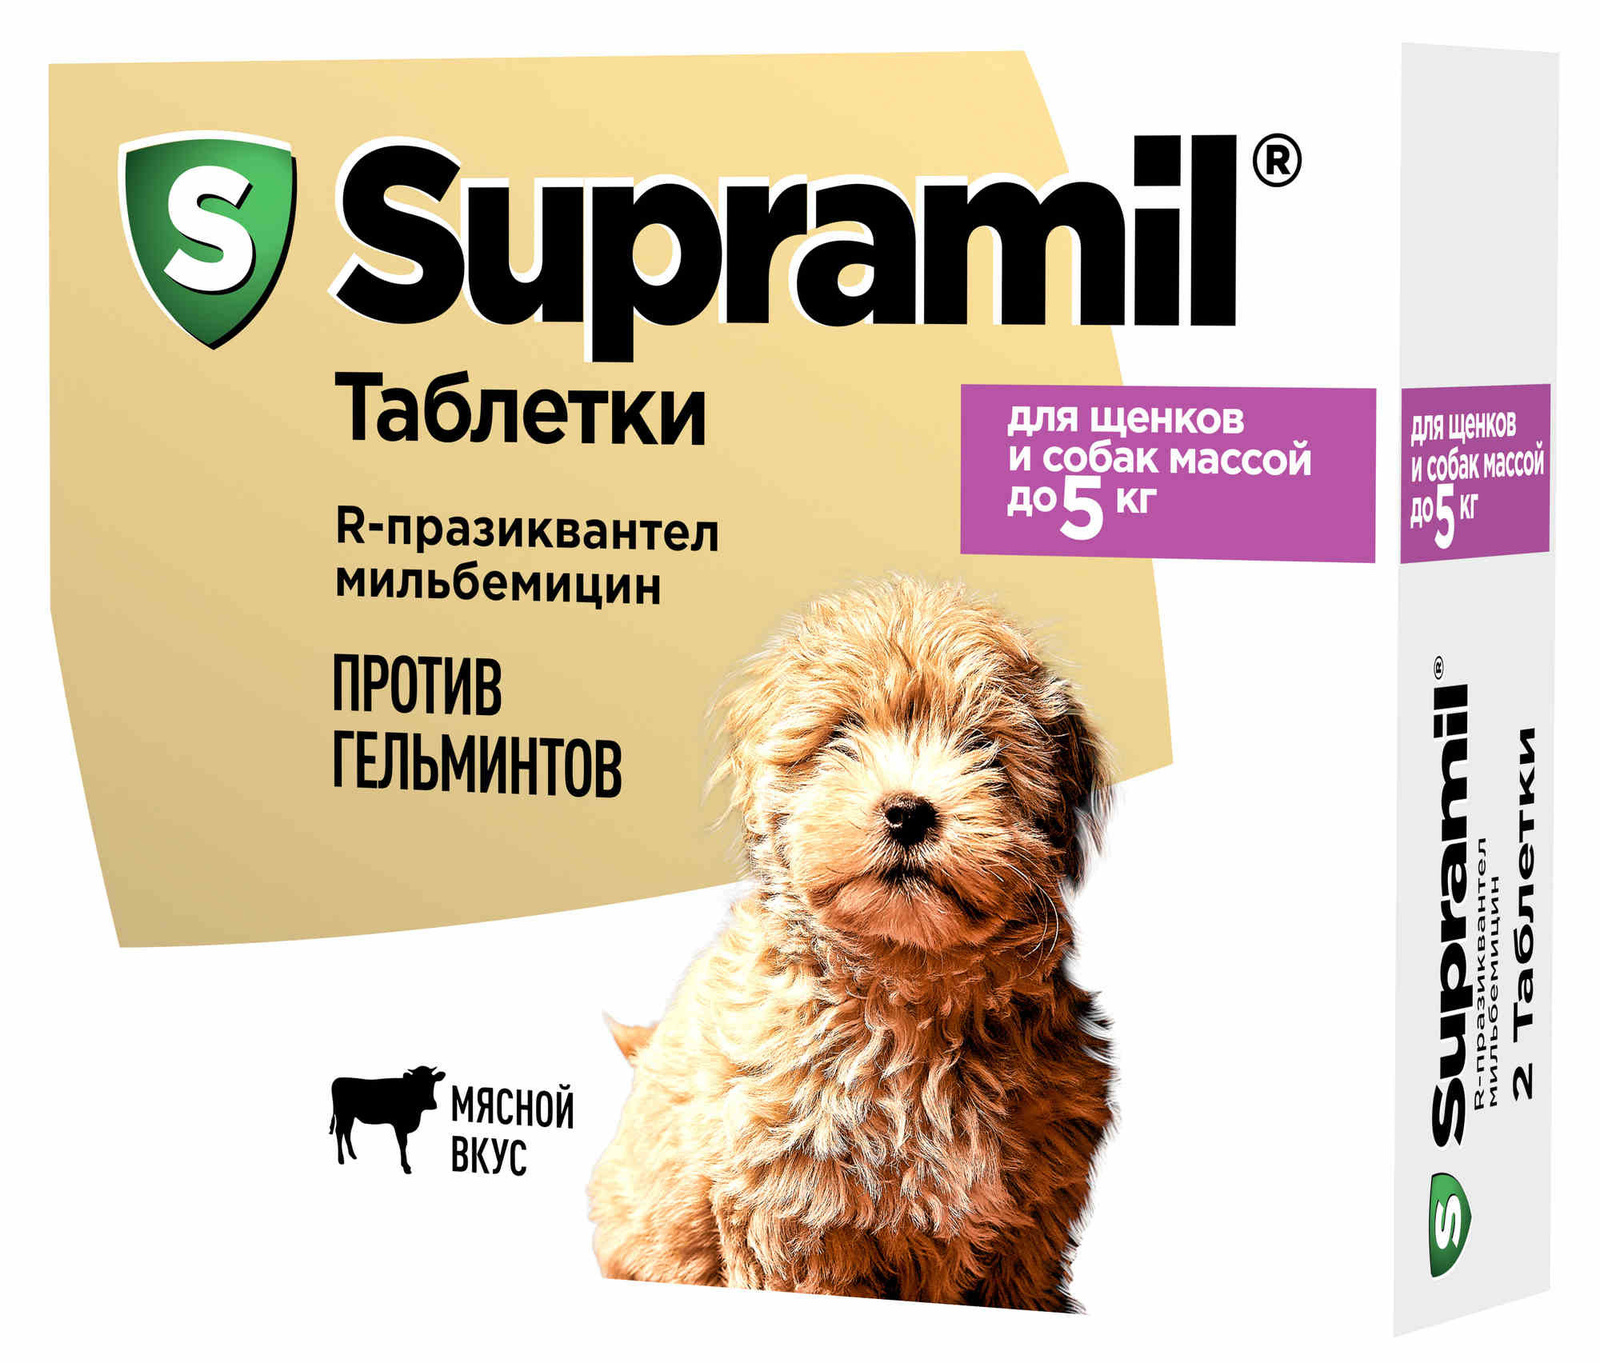 Астрафарм Астрафарм антигельминтный препарат Supramil для щенков и собак массой до 5 кг, таблетки (20 г) крка жевательные таблетки кладакса антибактериальный препарат широкого спектра 250 мг мг 0 03 кг 3 штуки